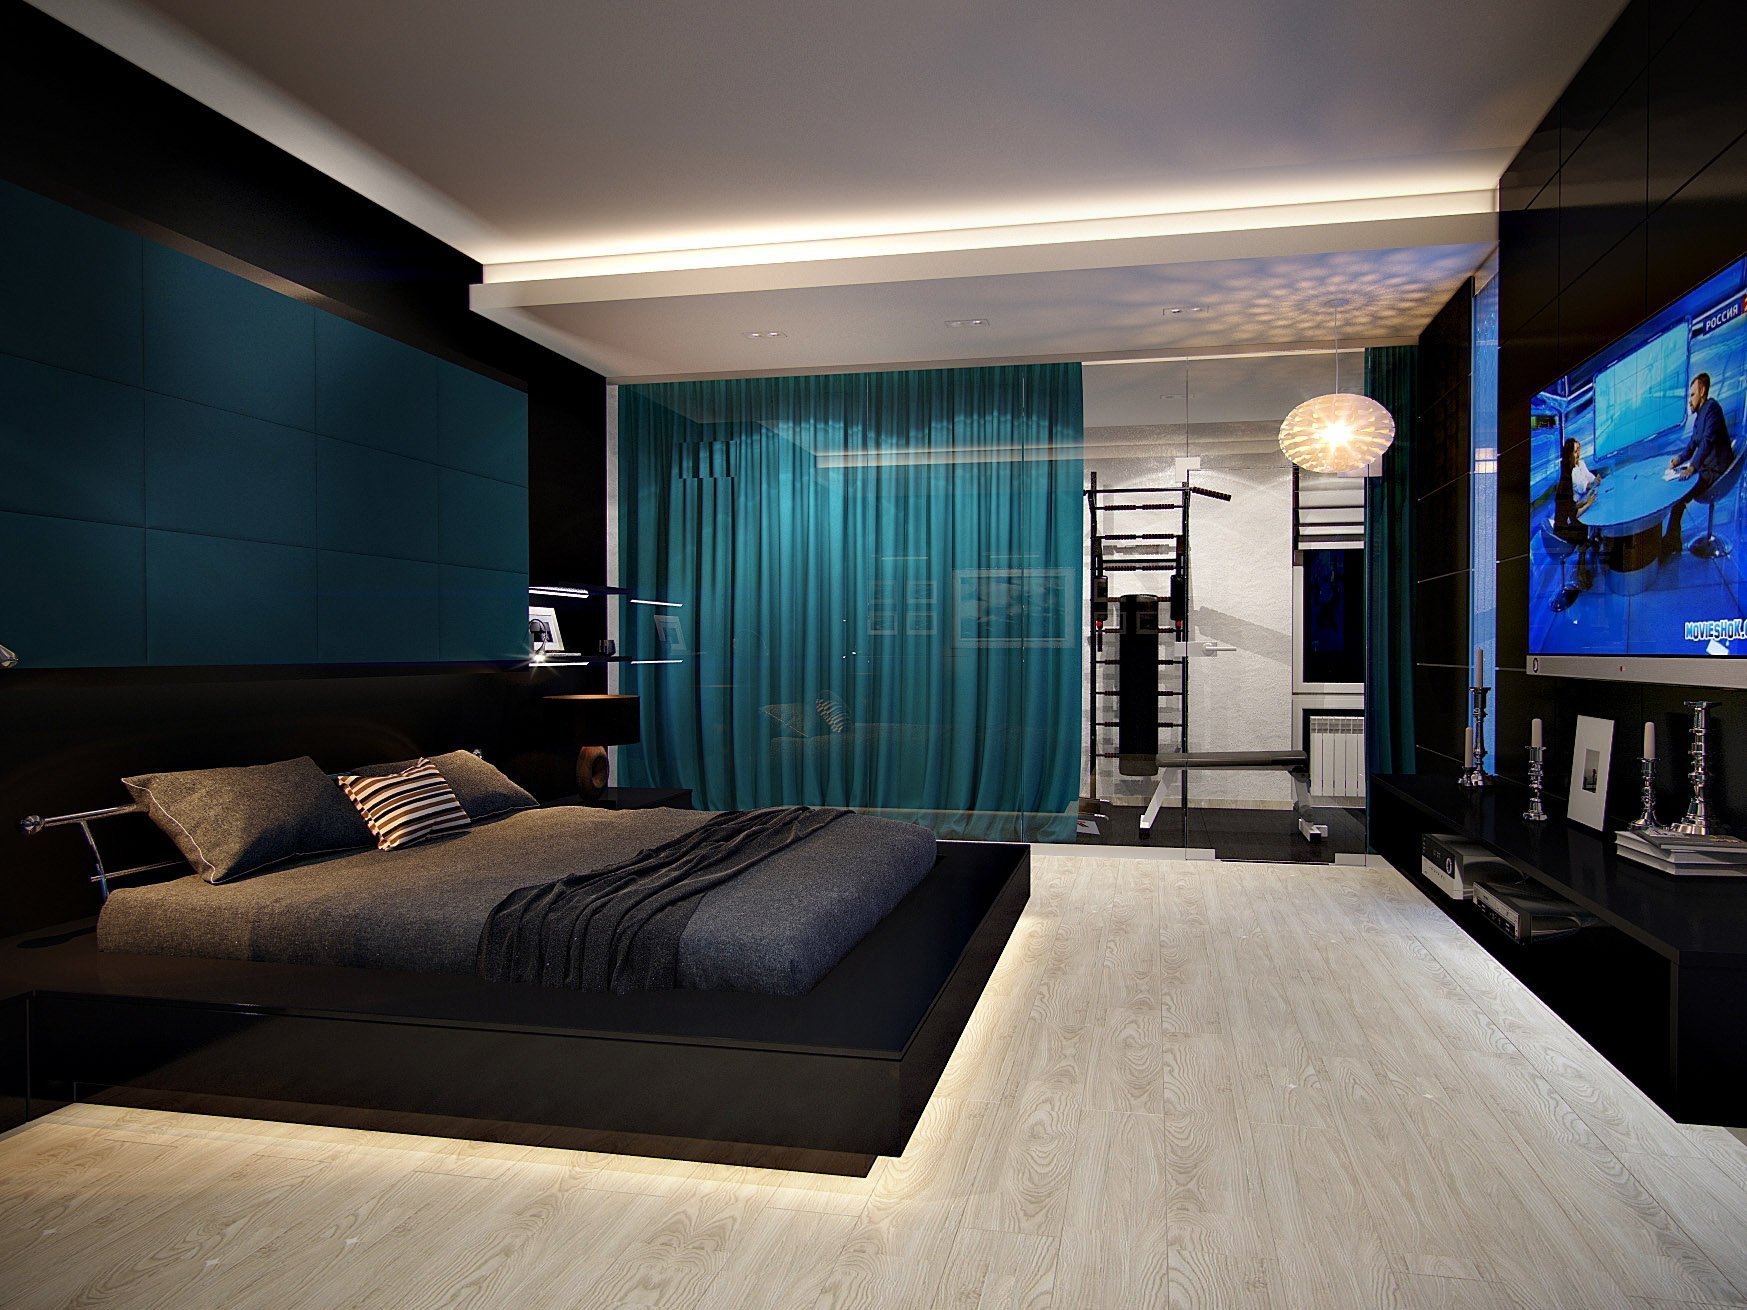 تصميم غرفة نوم عالية التكنولوجيا الصورة